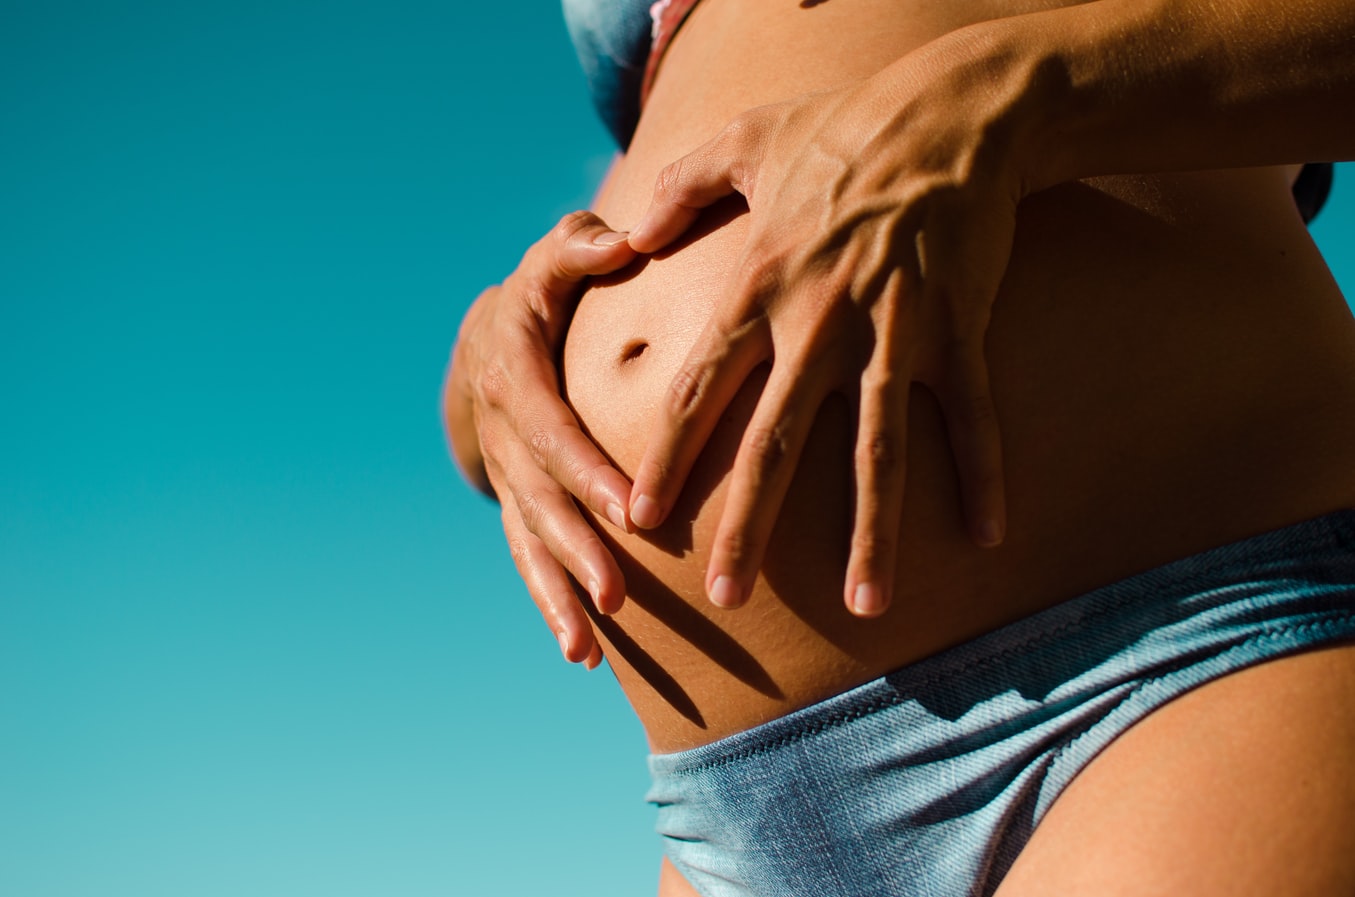 Sexo durante el embarazo: ¿Es seguro hacerlo? ¿Cuáles son los beneficios?